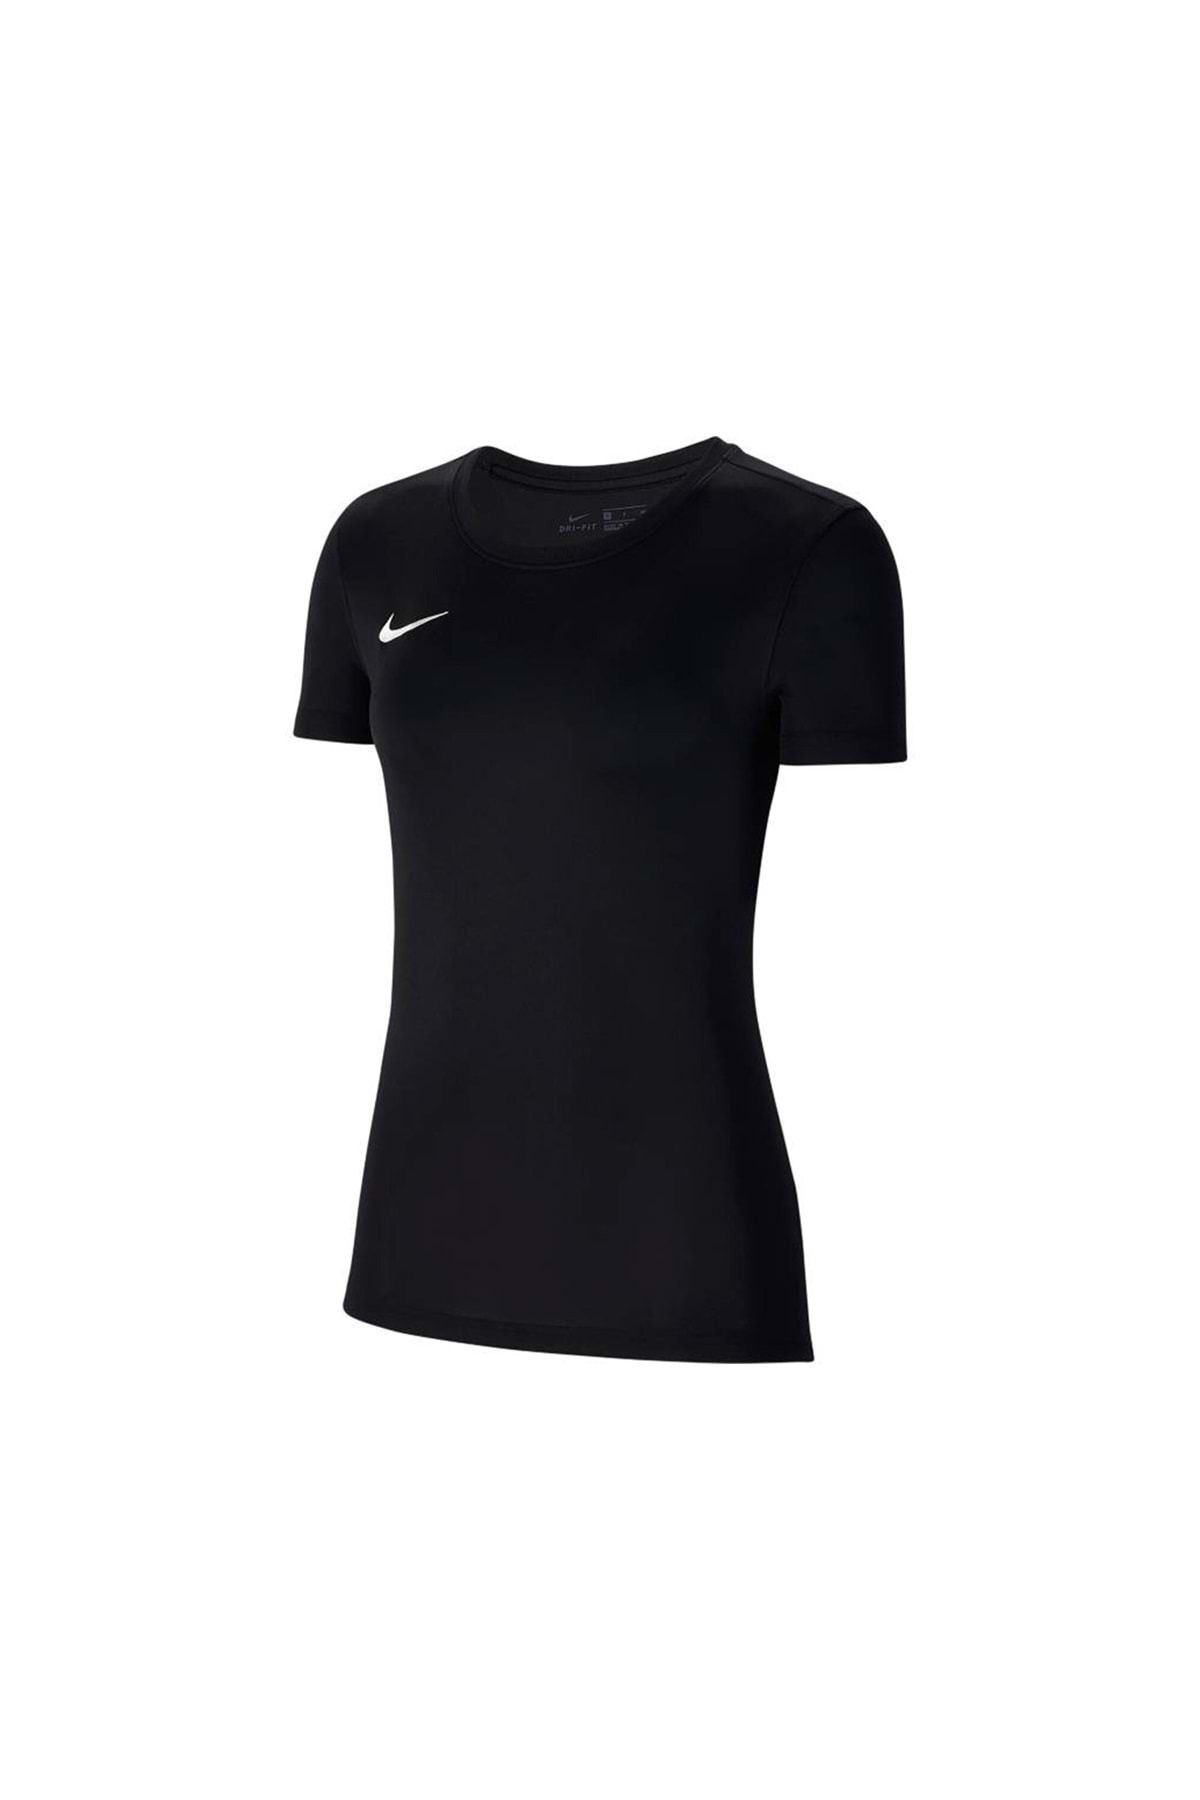 Nike Kadın Tişört Siyah